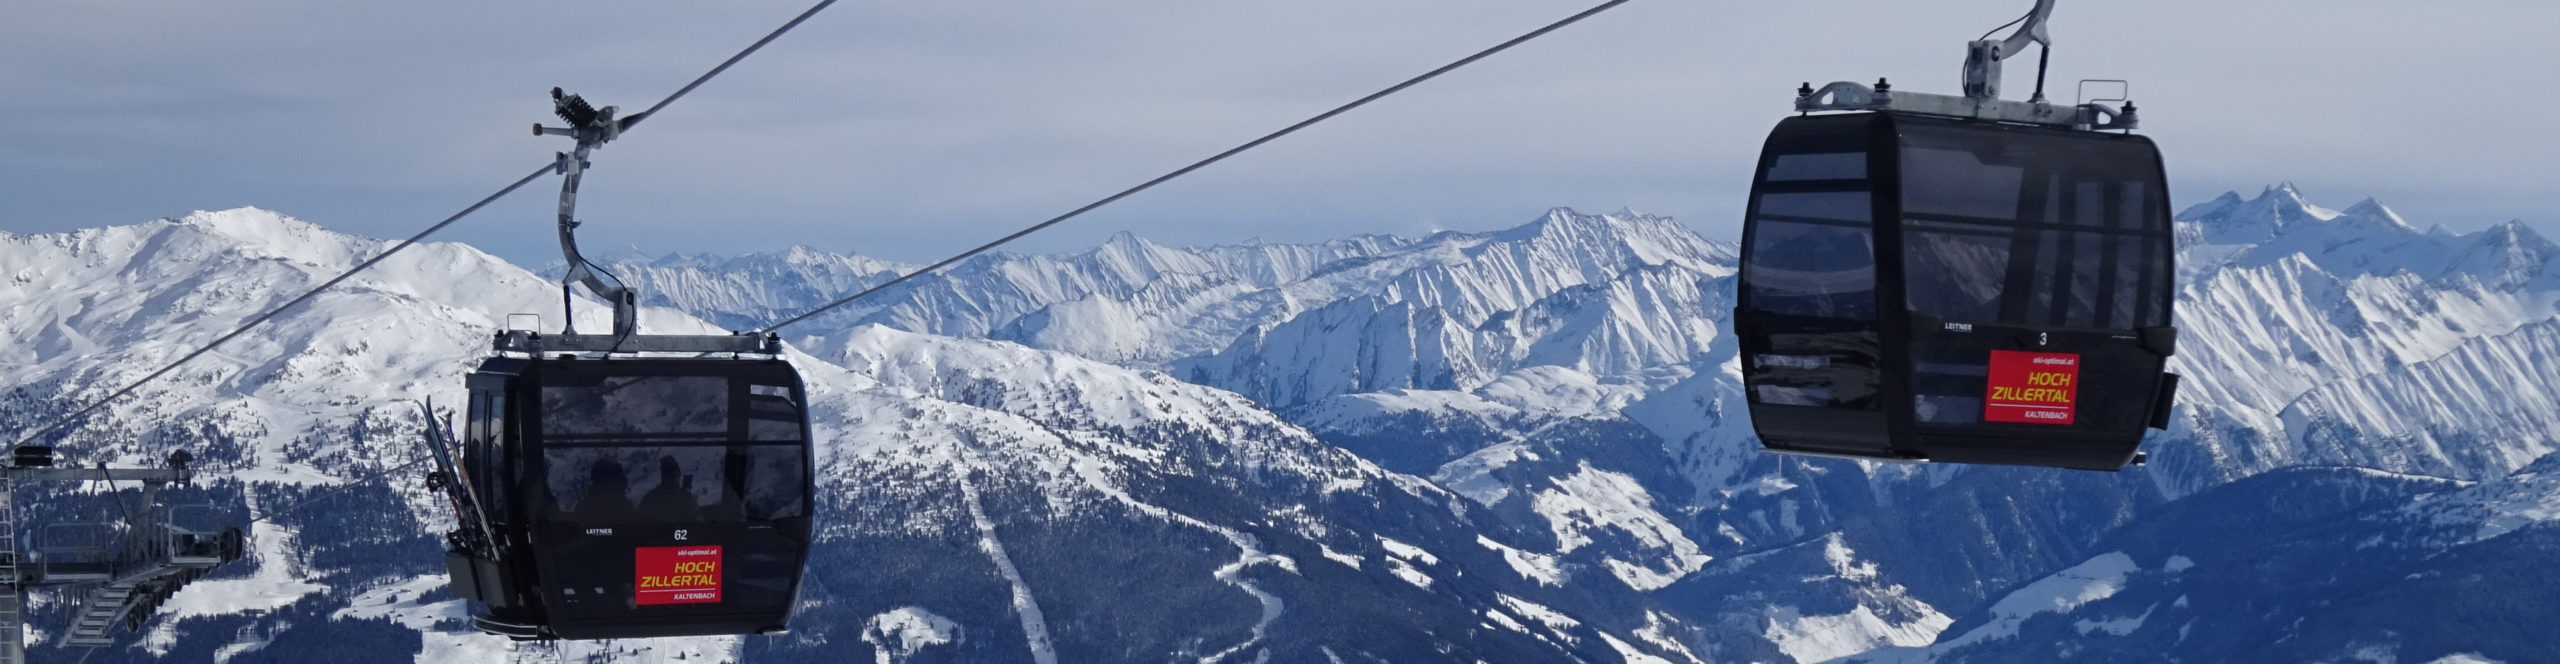 ZILLERTAL – KALTENBACH- SchneeSpaßTag – SkiTagesreise mit früher Ankunft – erster am Lift – SchneeSpaß ab 7.30Uhr 